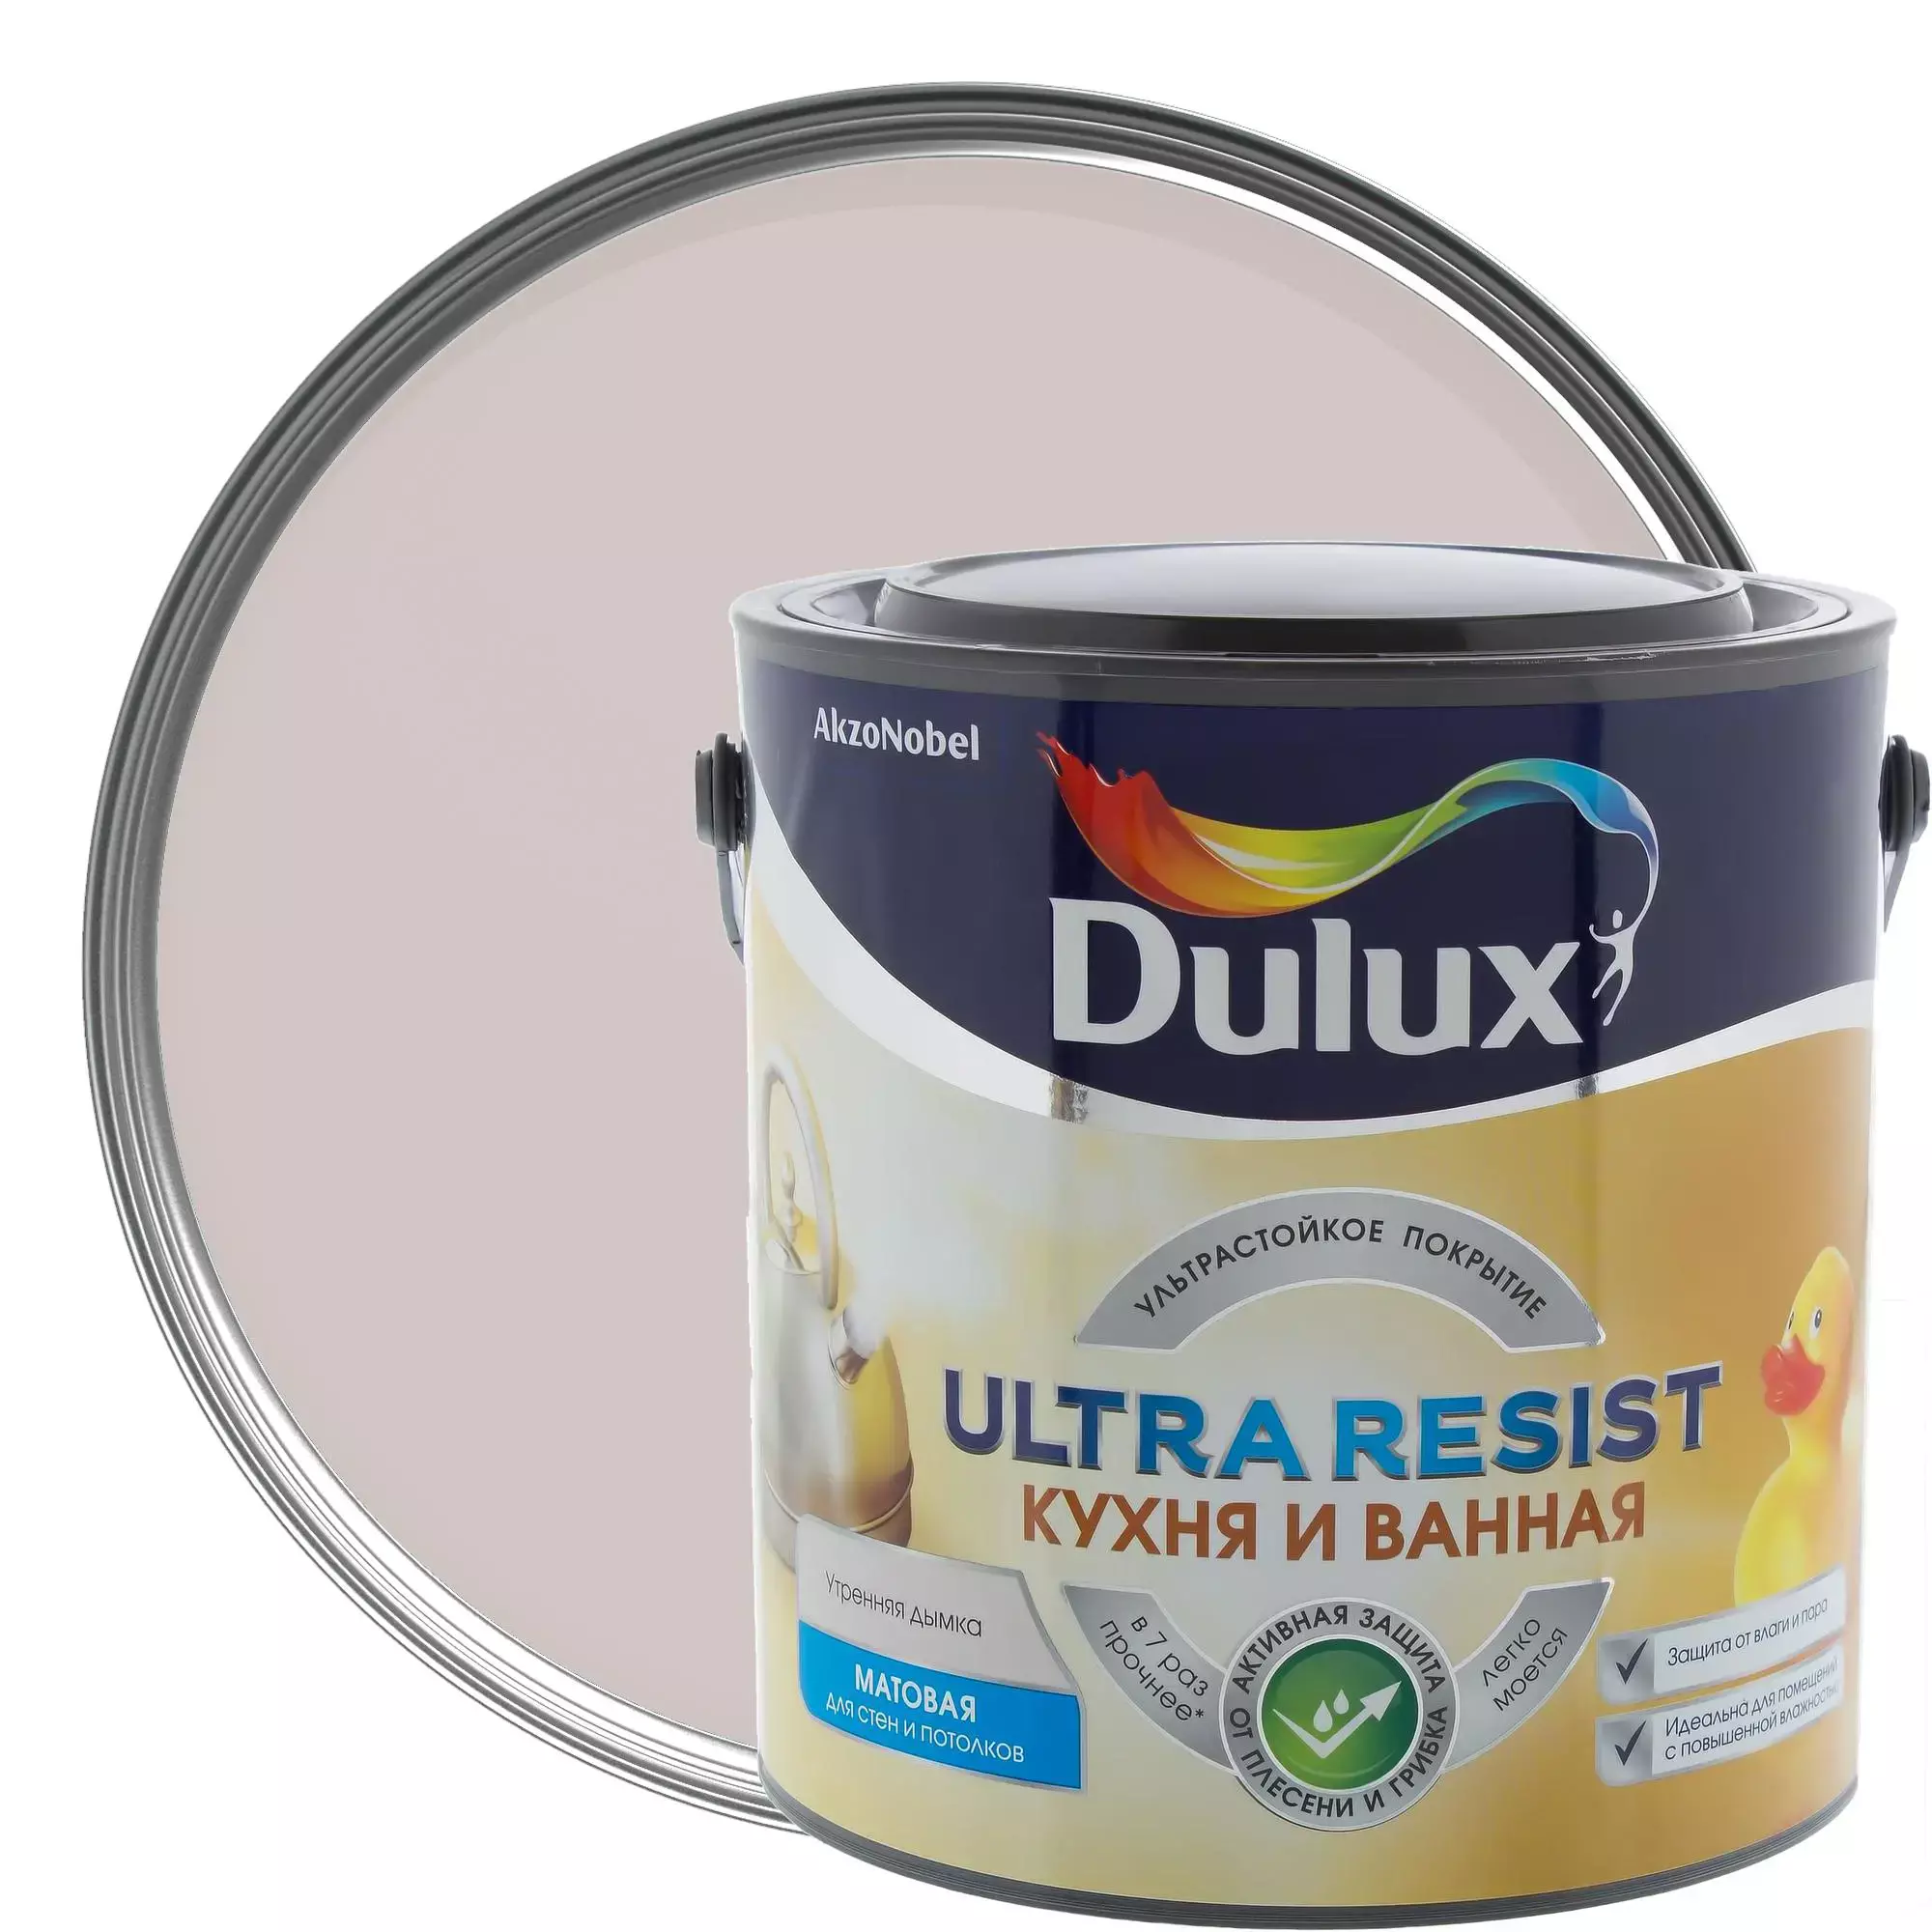 Ультра резист. Dulux ультра резист. Краска Дулюкс резист. Dulux Ultra resist для кухни и ванной. Dulux Ultra resist ванная.